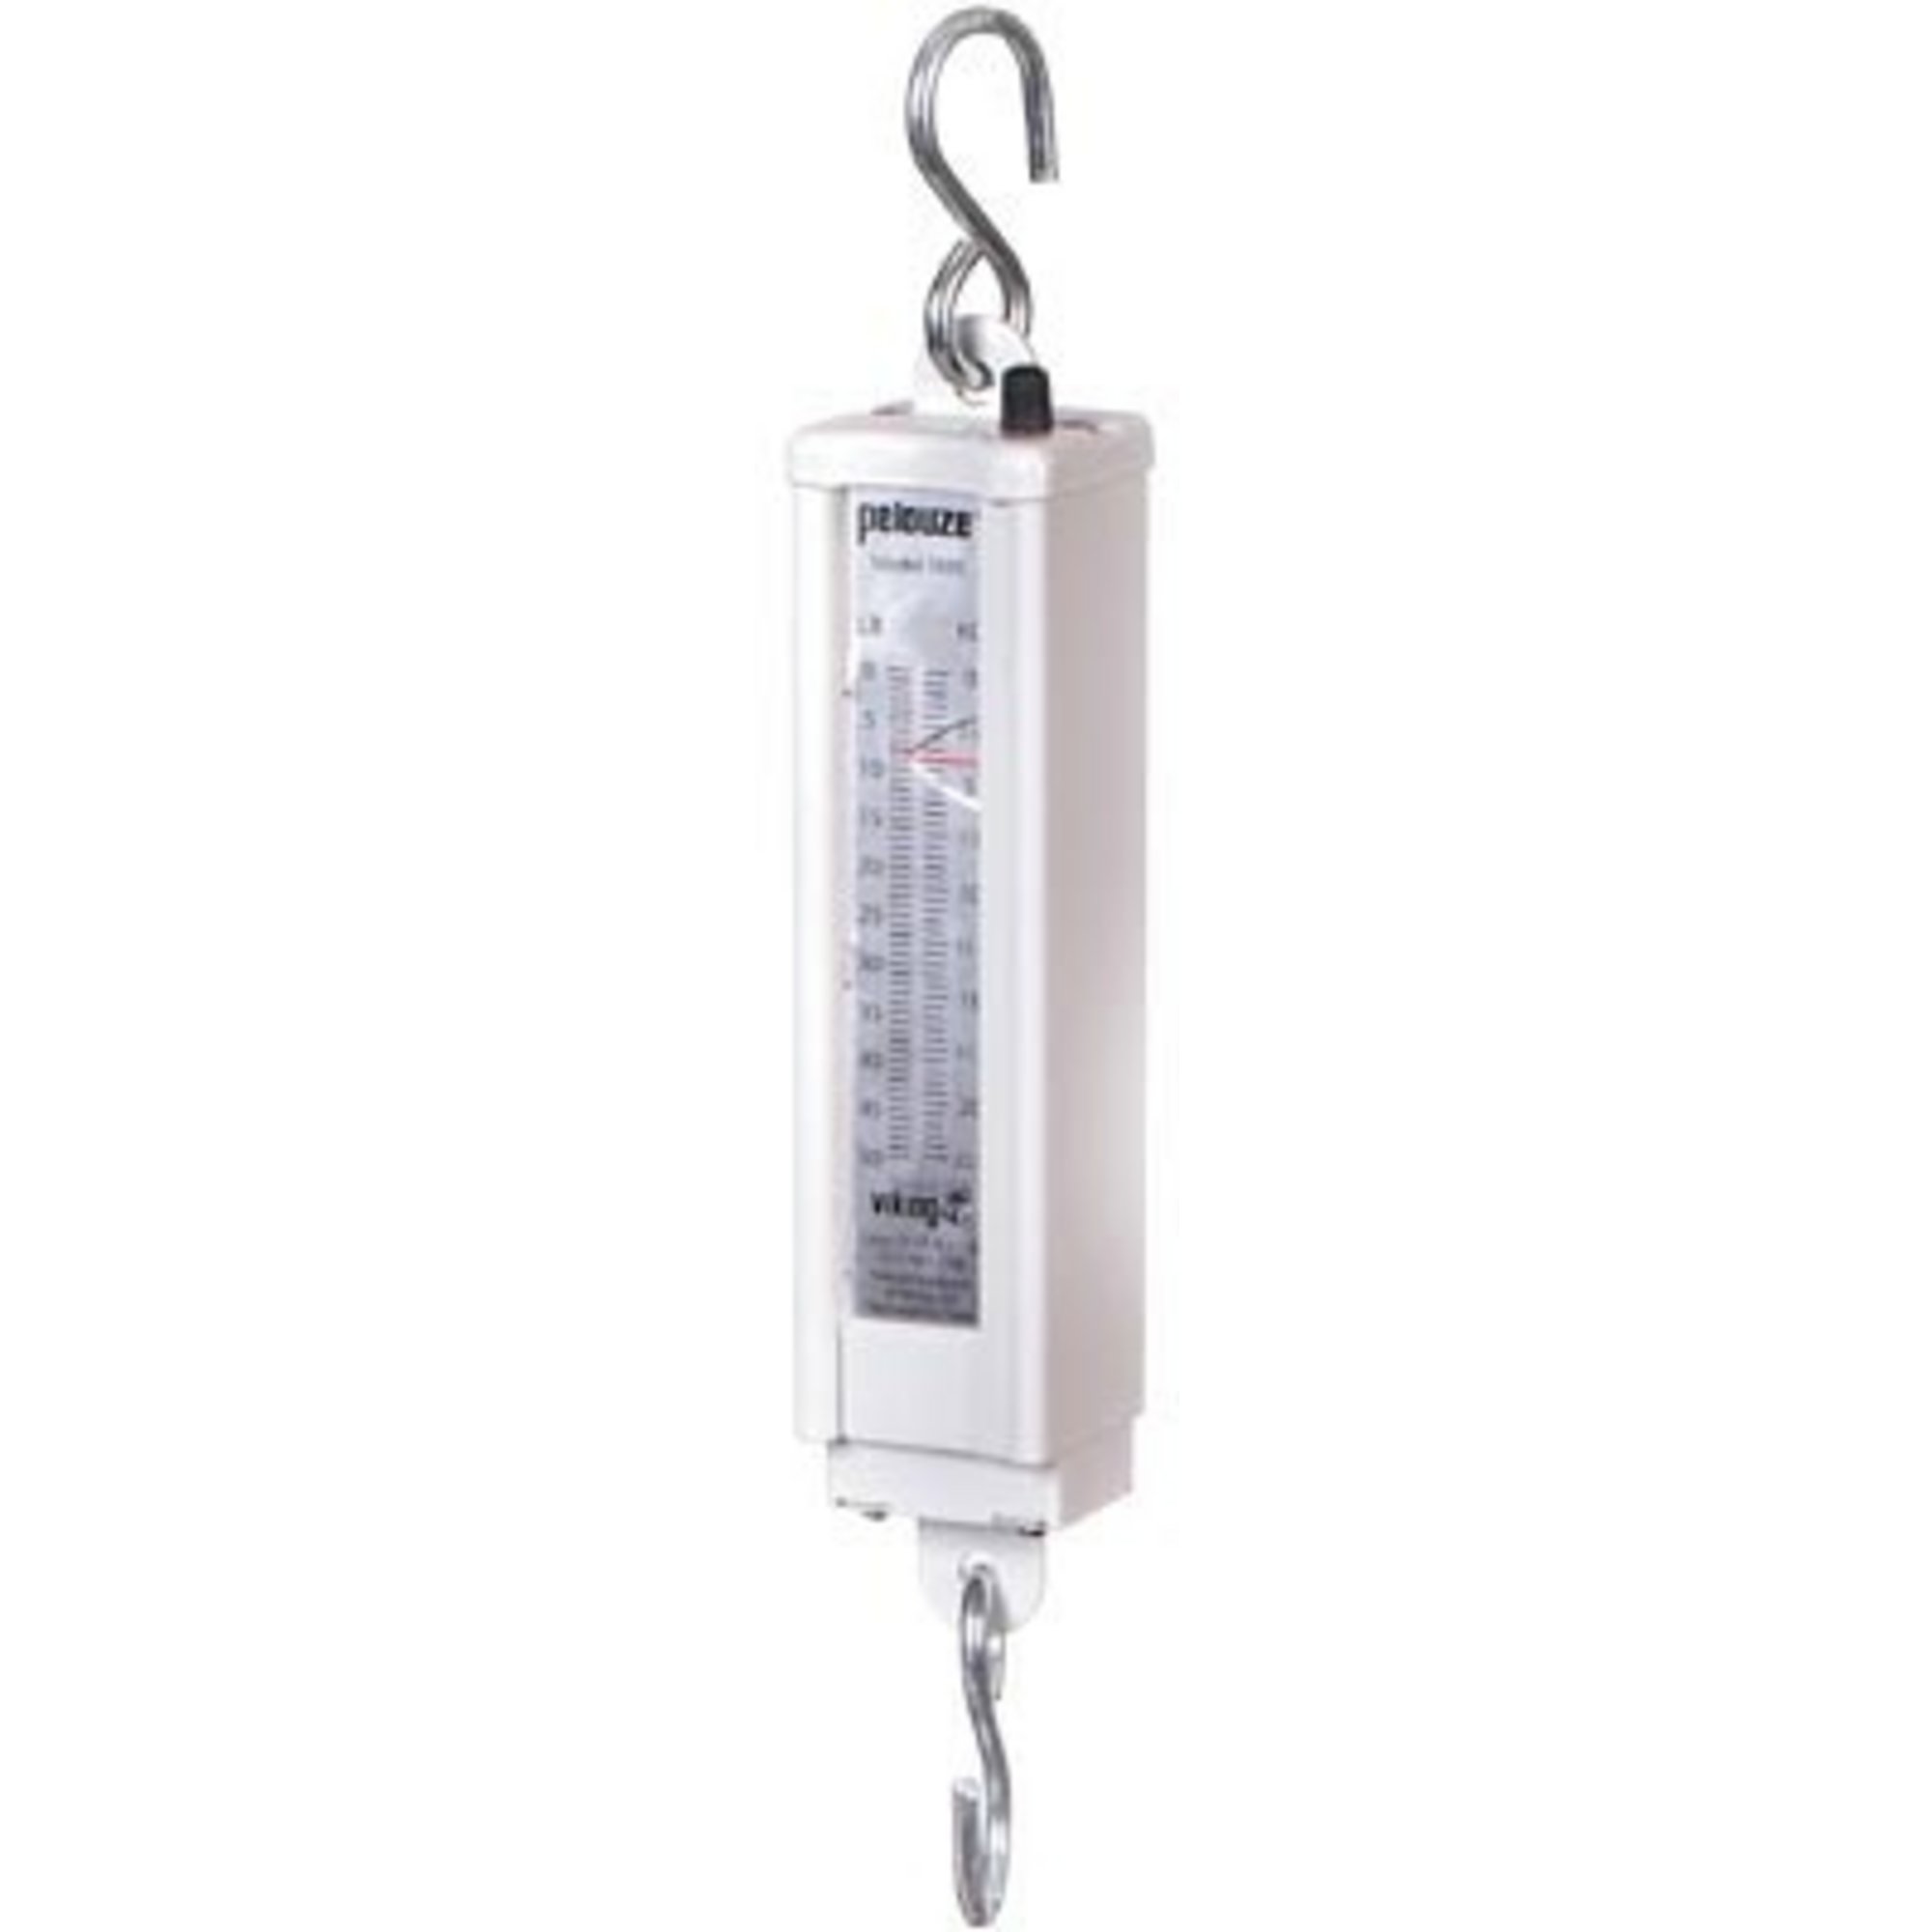 CS750™ Medium Capacity Hanging Scales